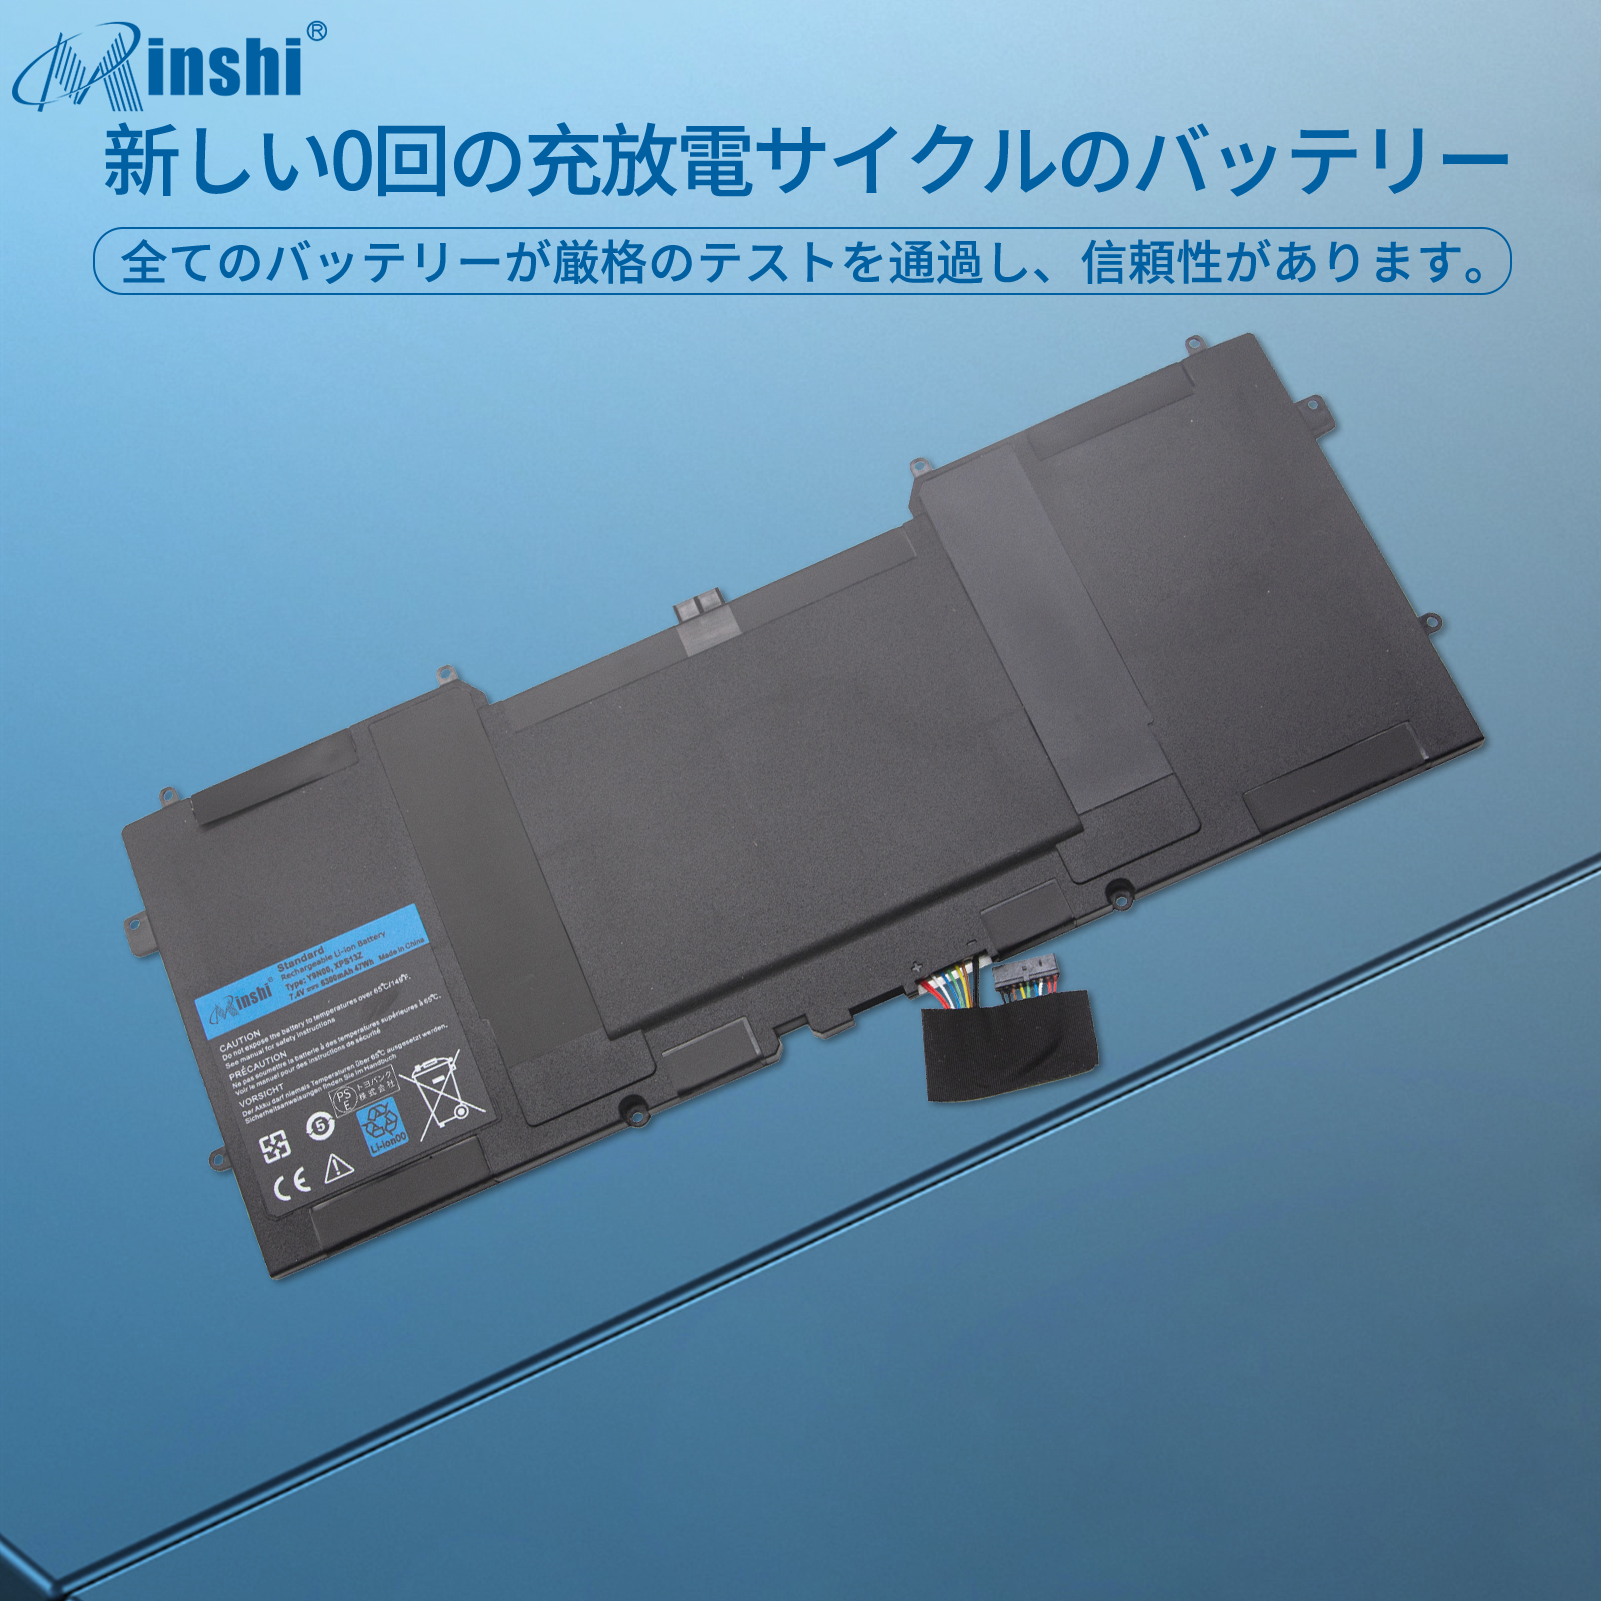  minshi DELL XPS 12 (L221x) D-1708 対応 互換バッテリー  PSE認定済 交換用バッテリー